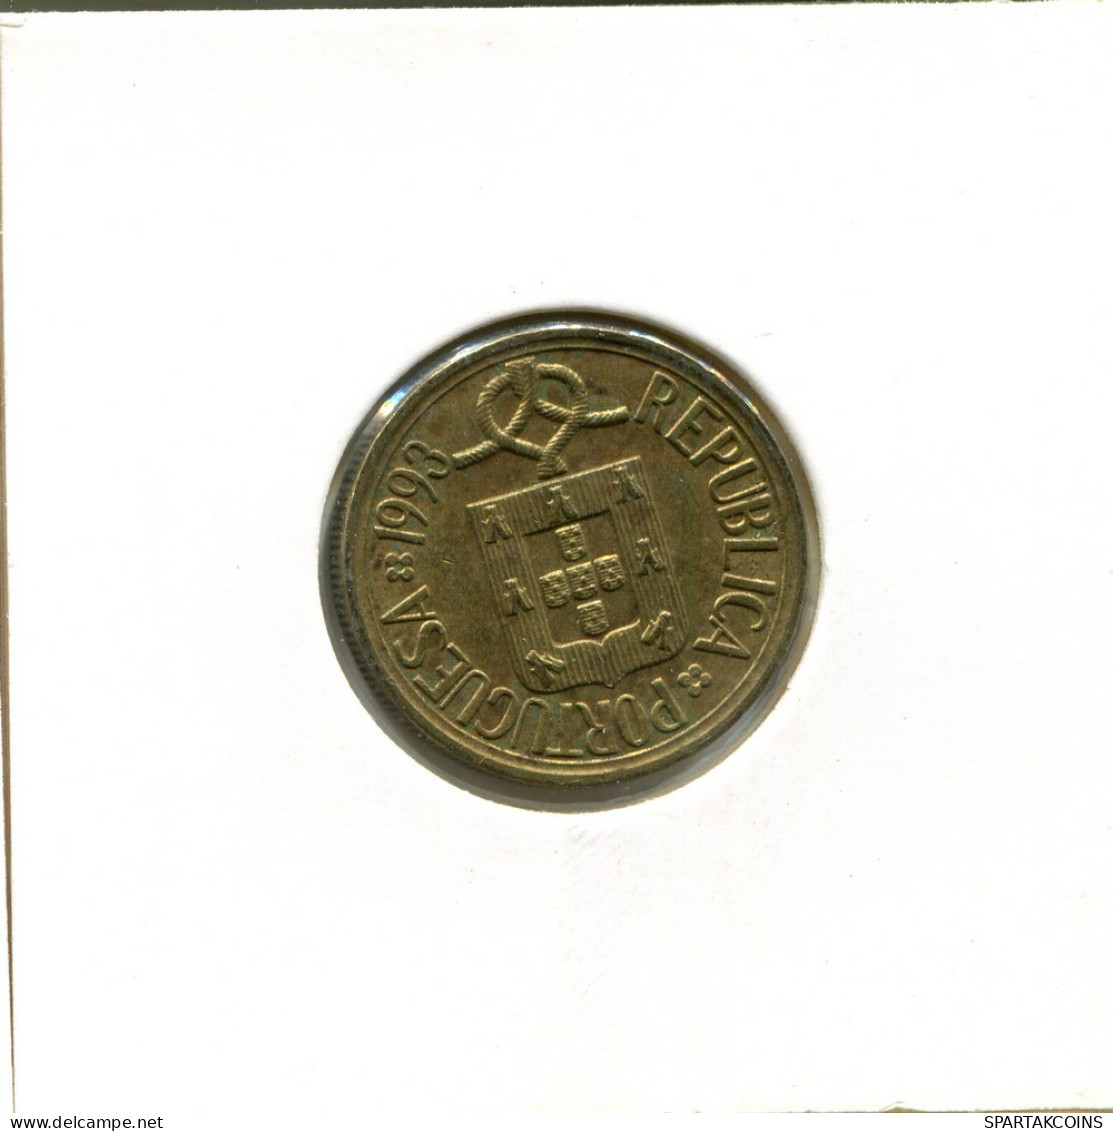 5 ESCUDOS 1993 PORTUGAL Coin #AT392.U.A - Portogallo